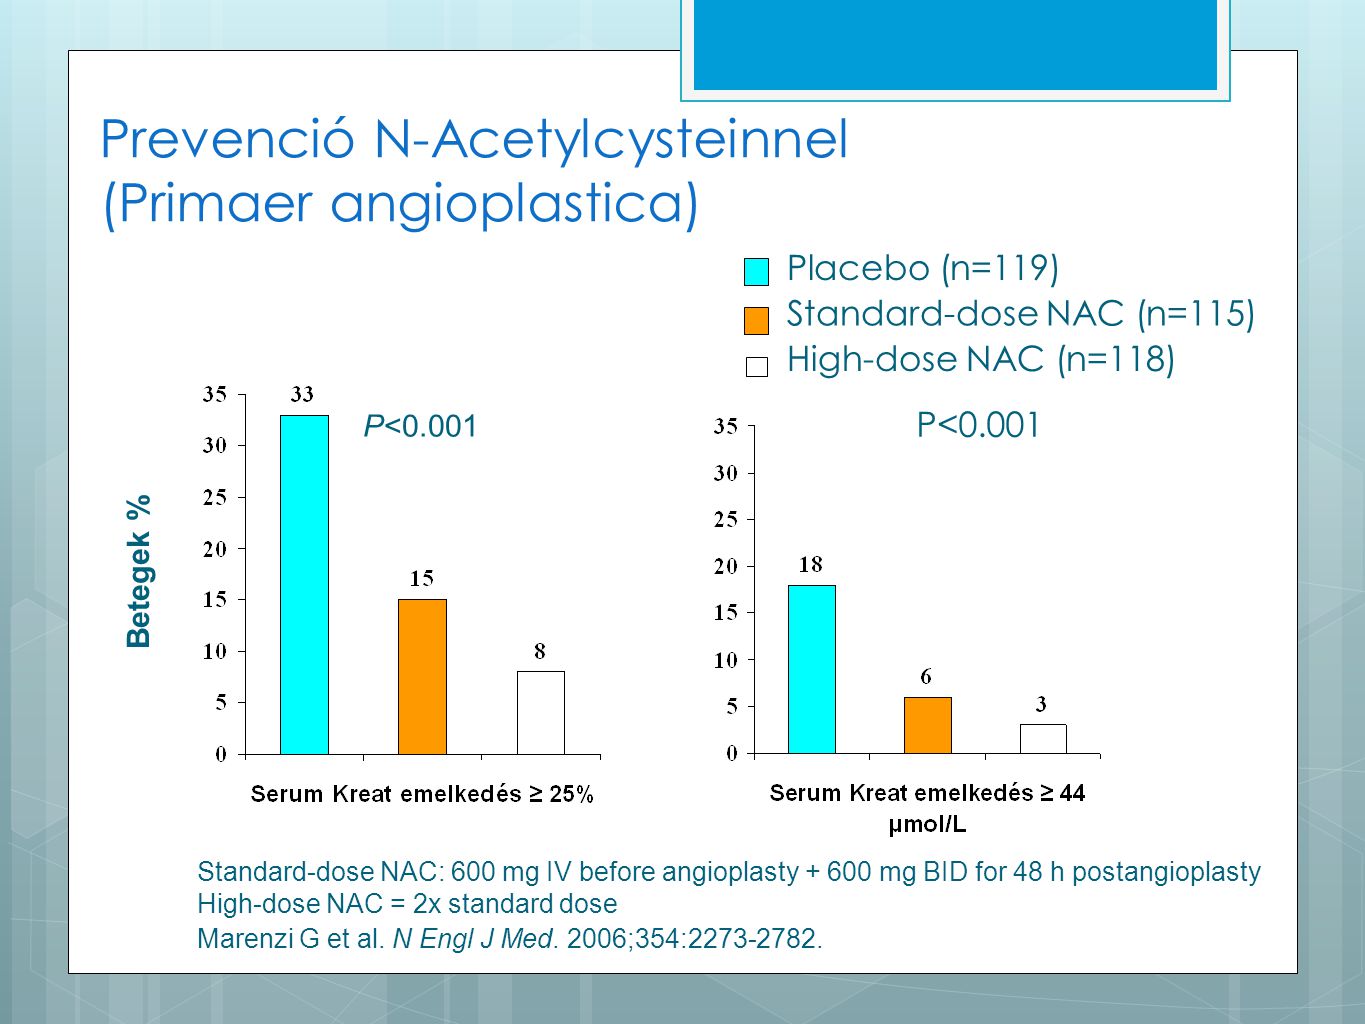 Prevenció N-Acetylcysteinnel (Primaer angioplastica)